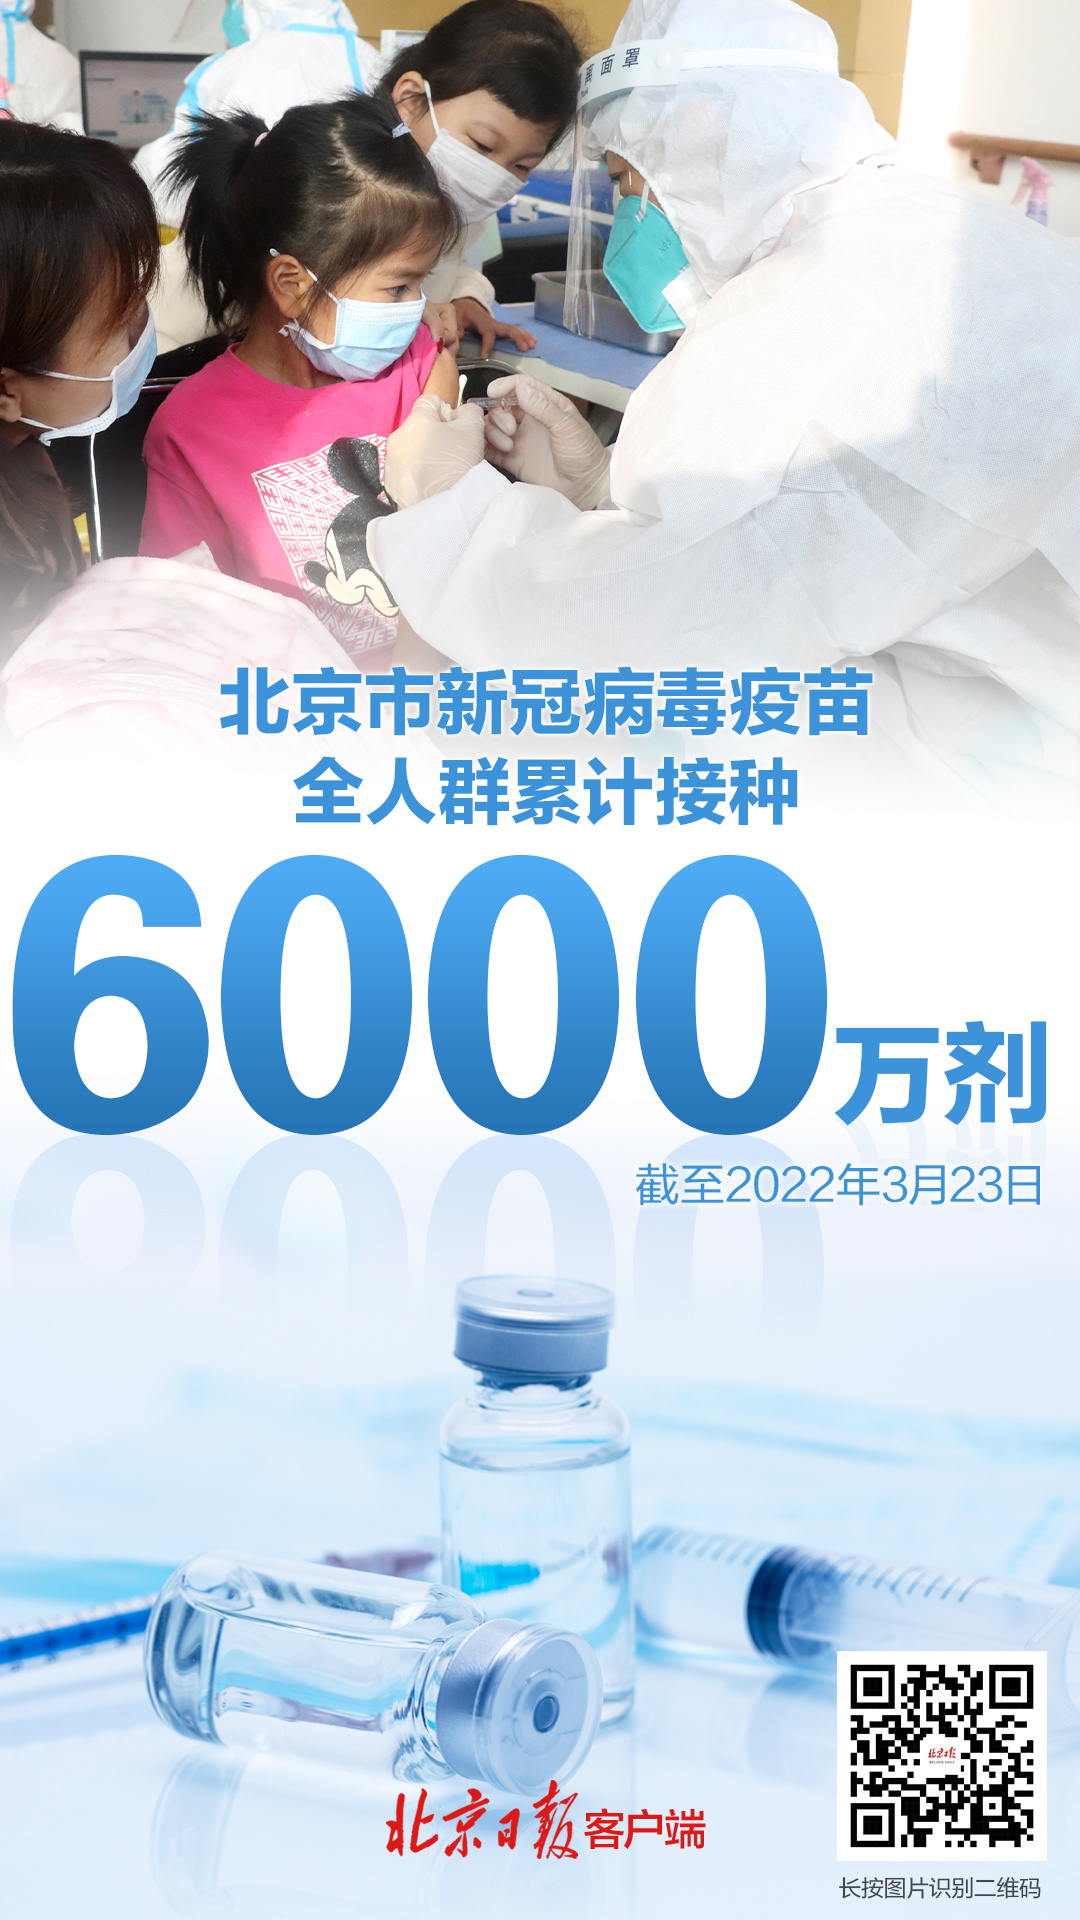 北京市新冠疫苗接种突破6000万剂 四成养老机构老年人接种第一剂新冠疫苗